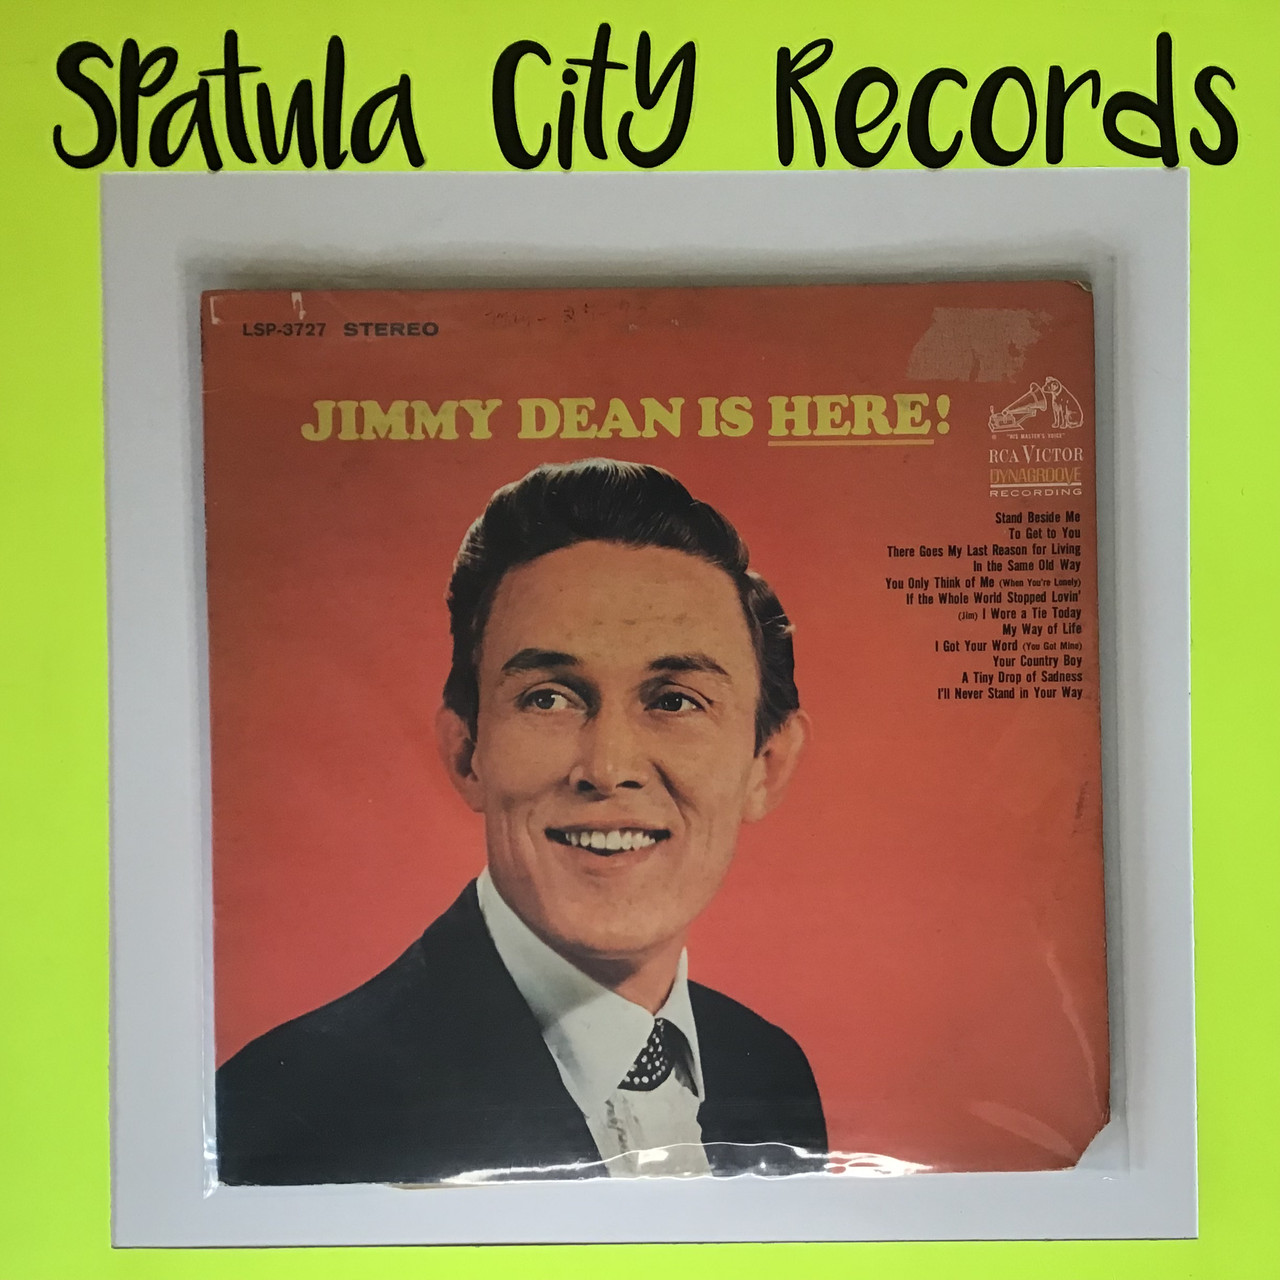 Jimmy Dean - Jimmy Dean is Here! - vinyl record LP